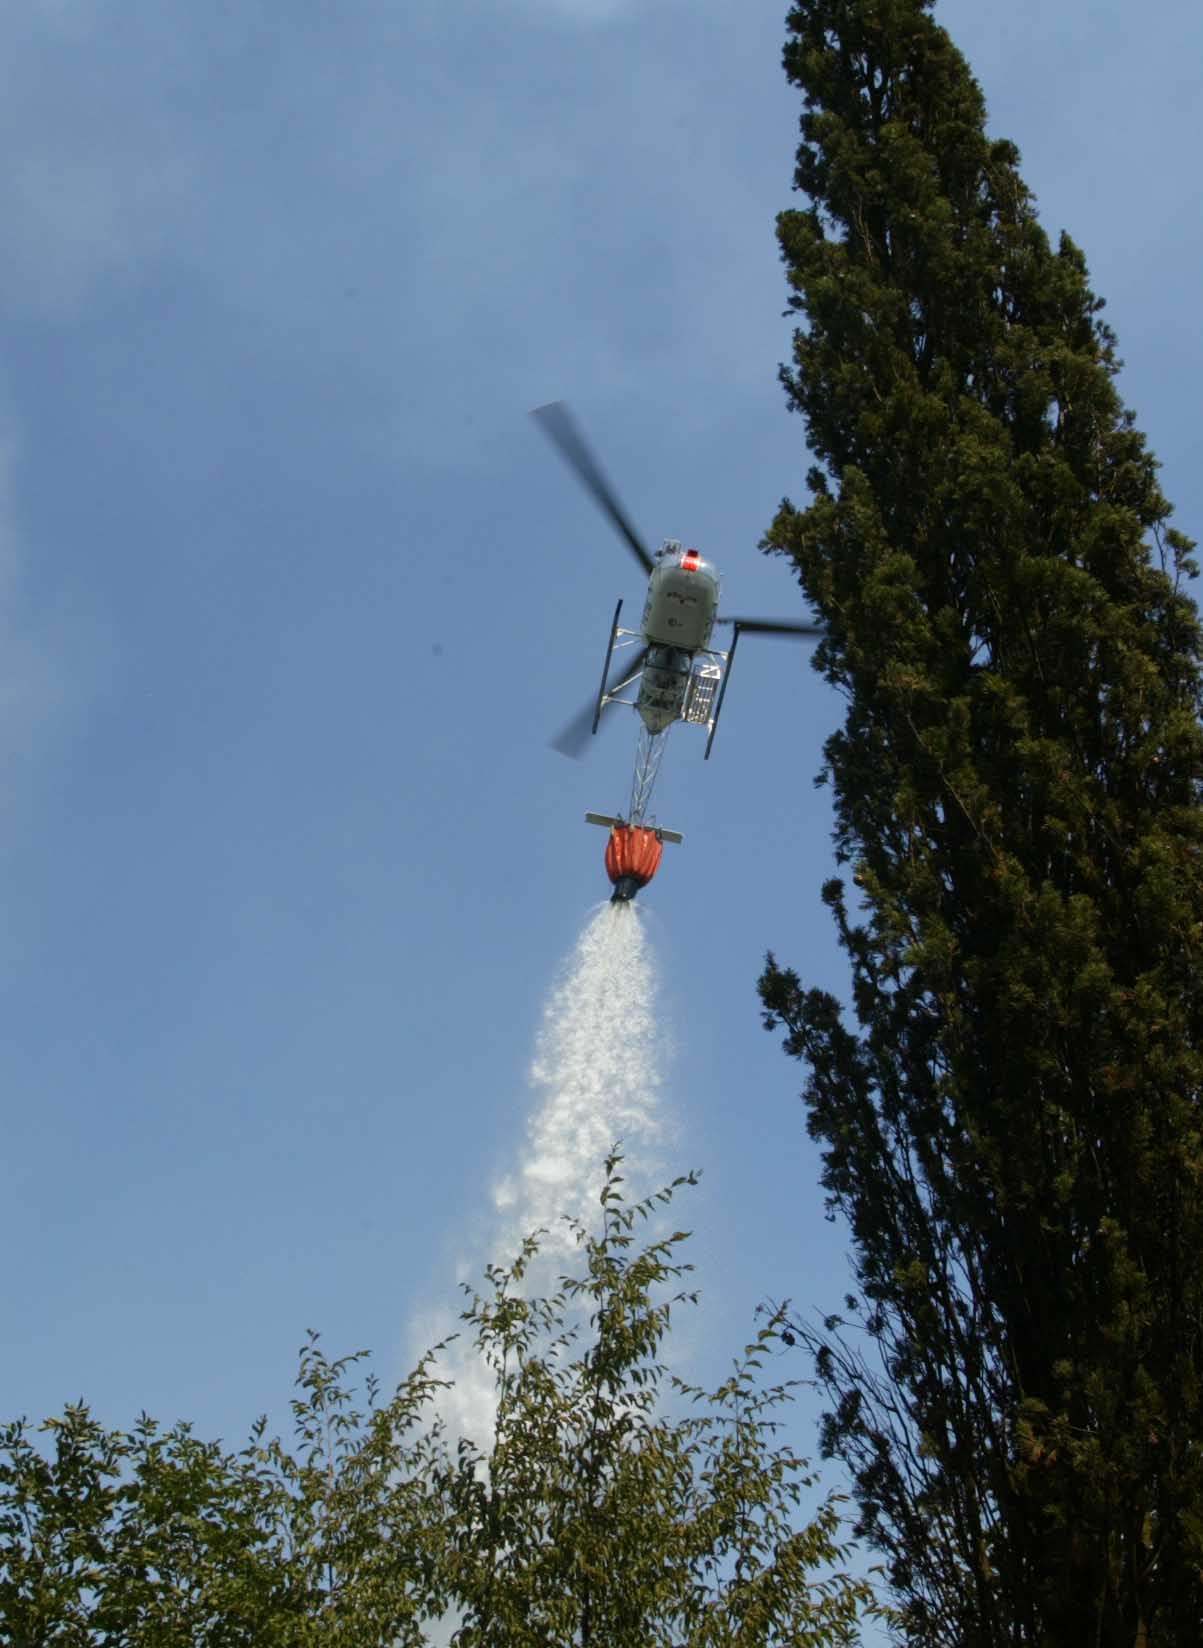 Incendi boschivi, in Toscana 200 roghi da gennaio ad agosto